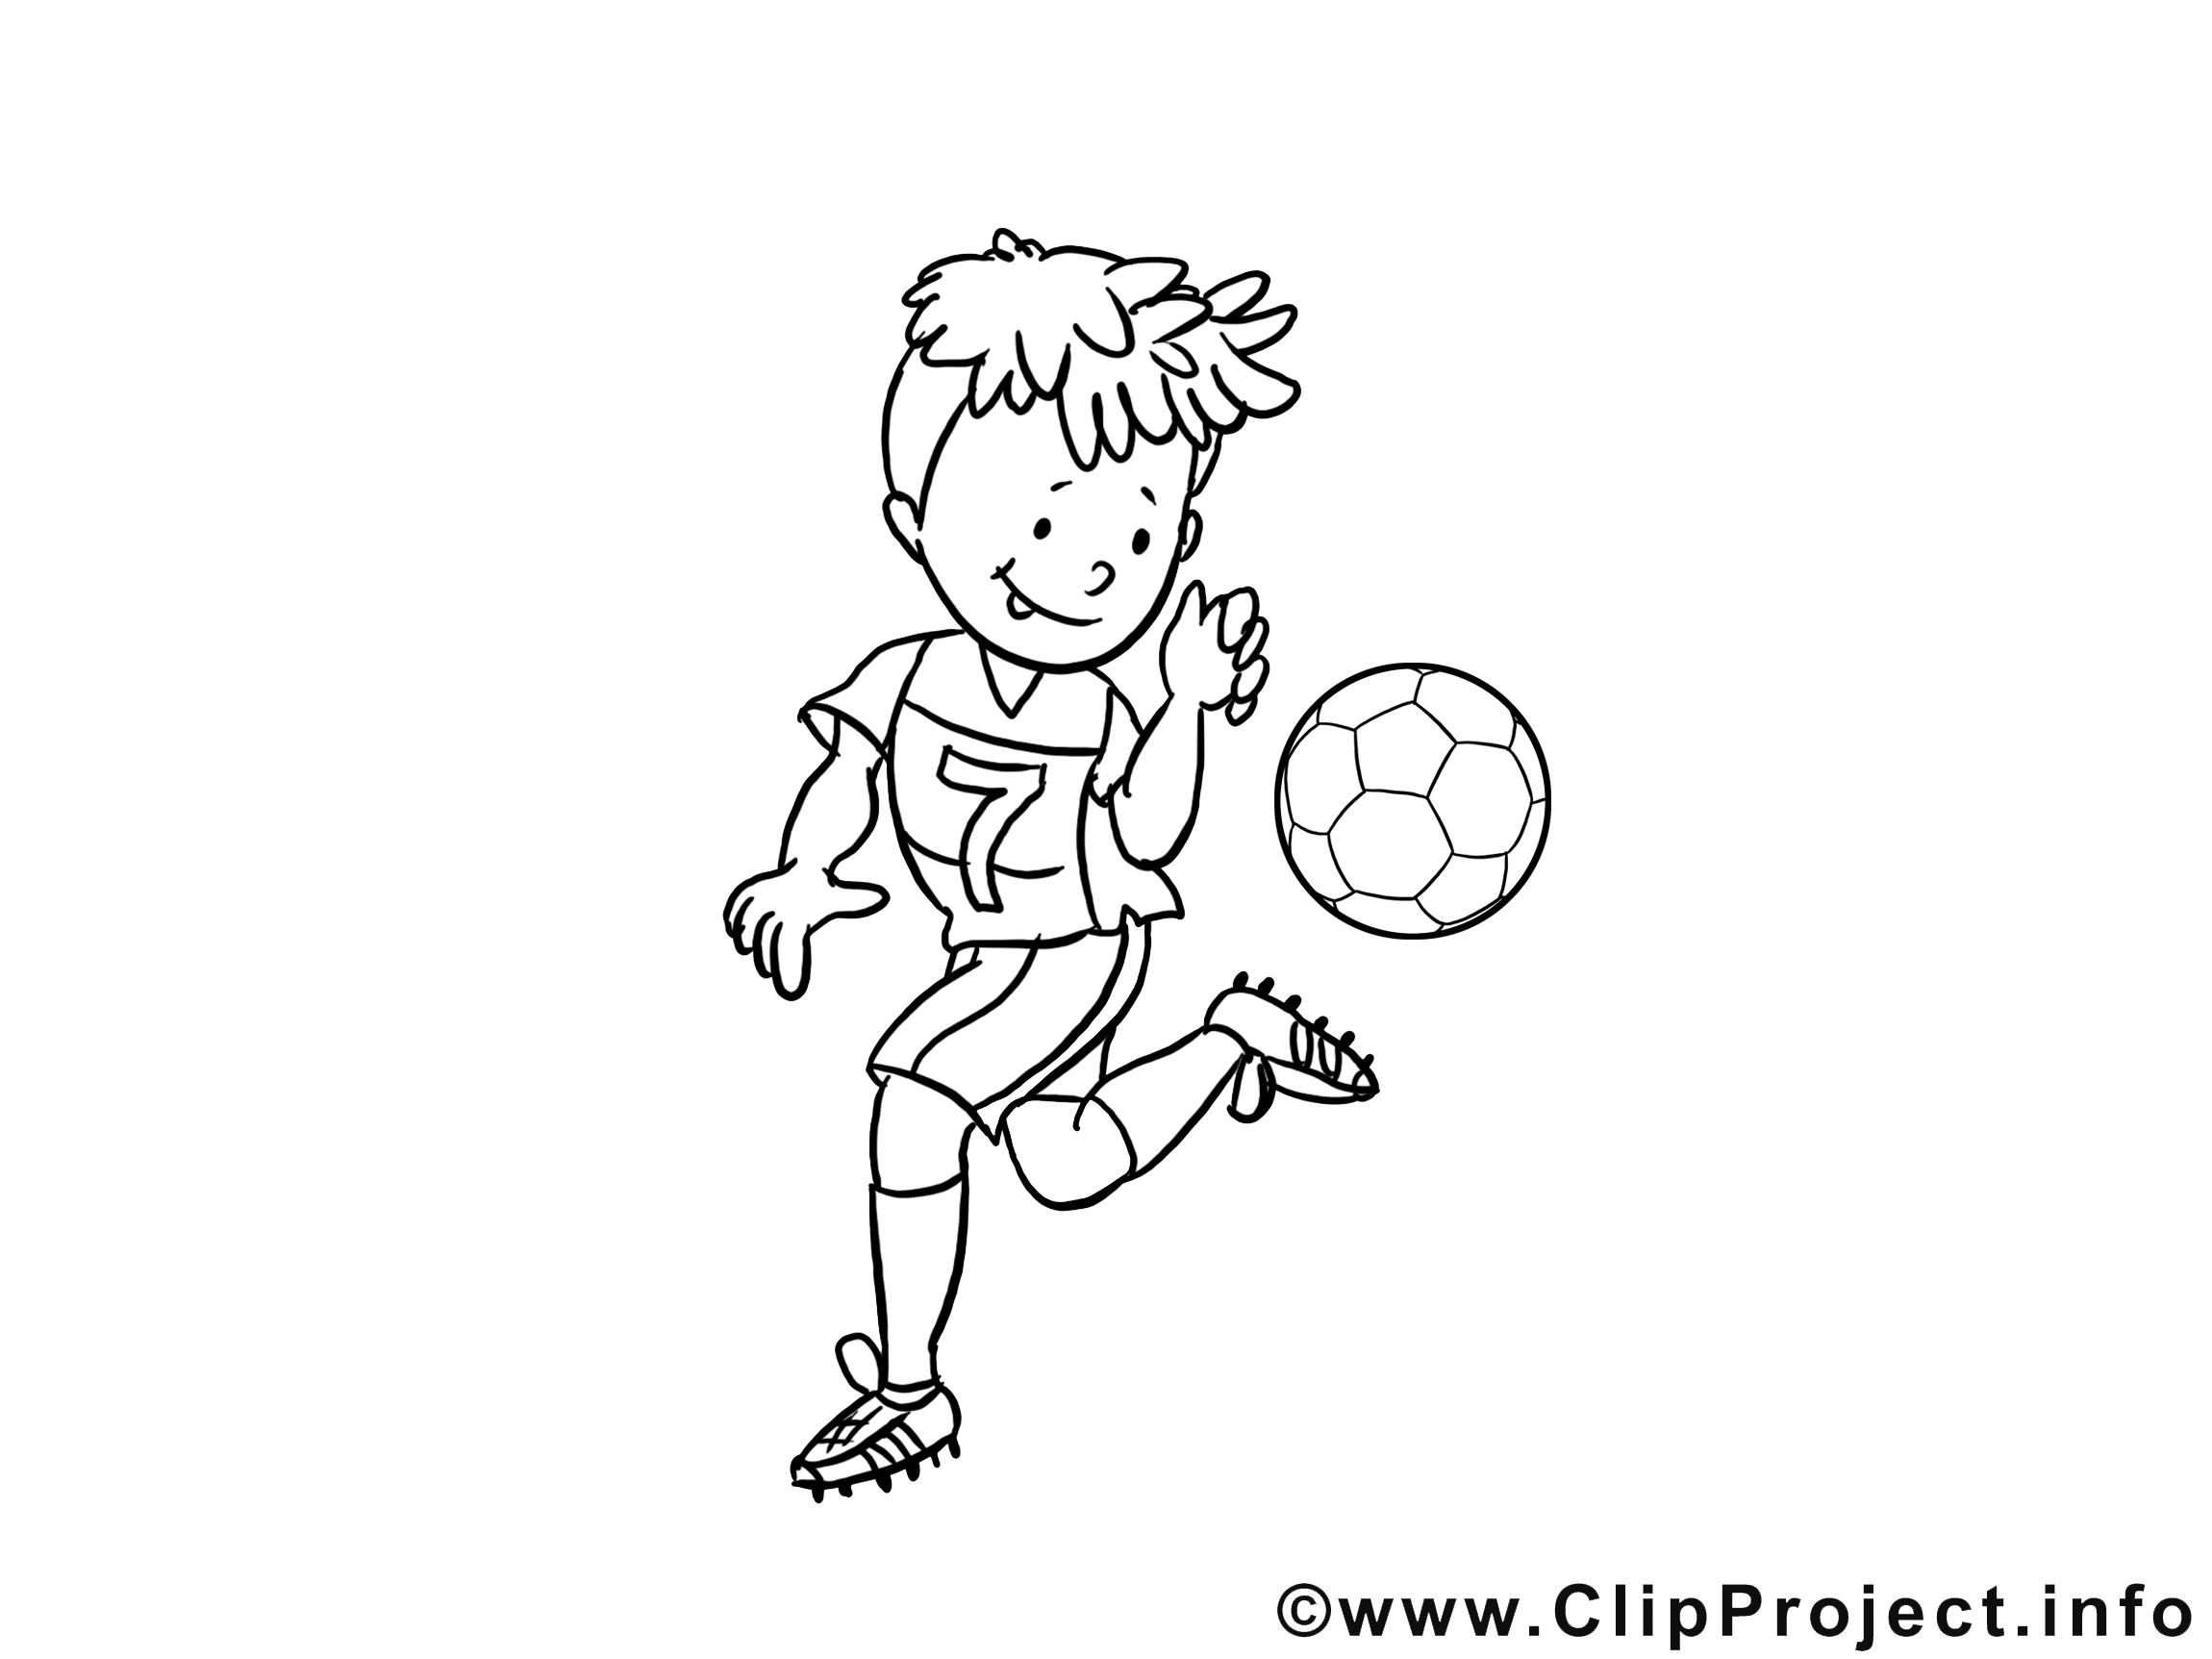 Kindermalvorlagen Fussball verwandt mit Kindermalvorlagen